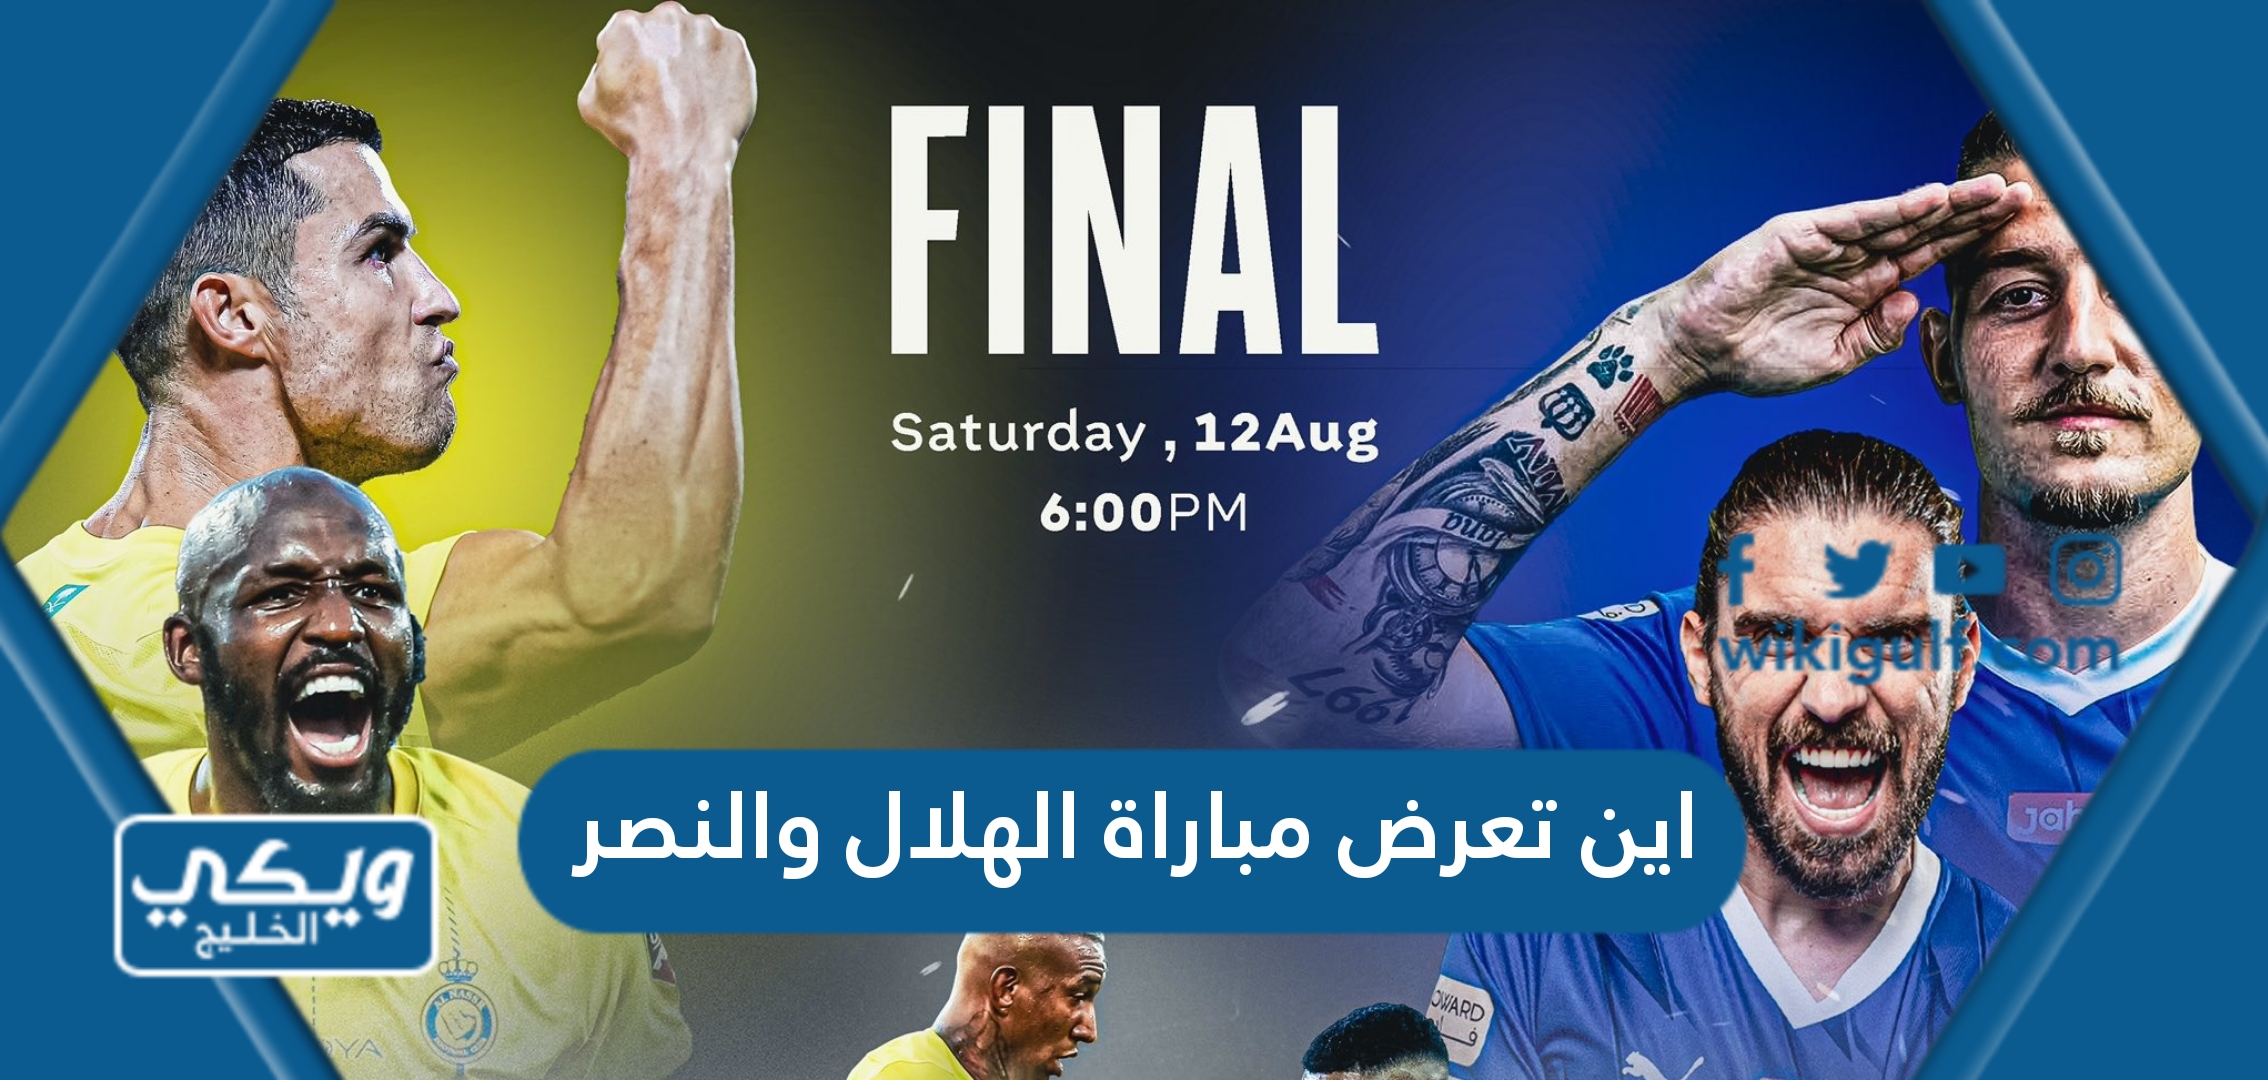 اين تعرض مباراة الهلال والنصر في نهائي البطولة العربية